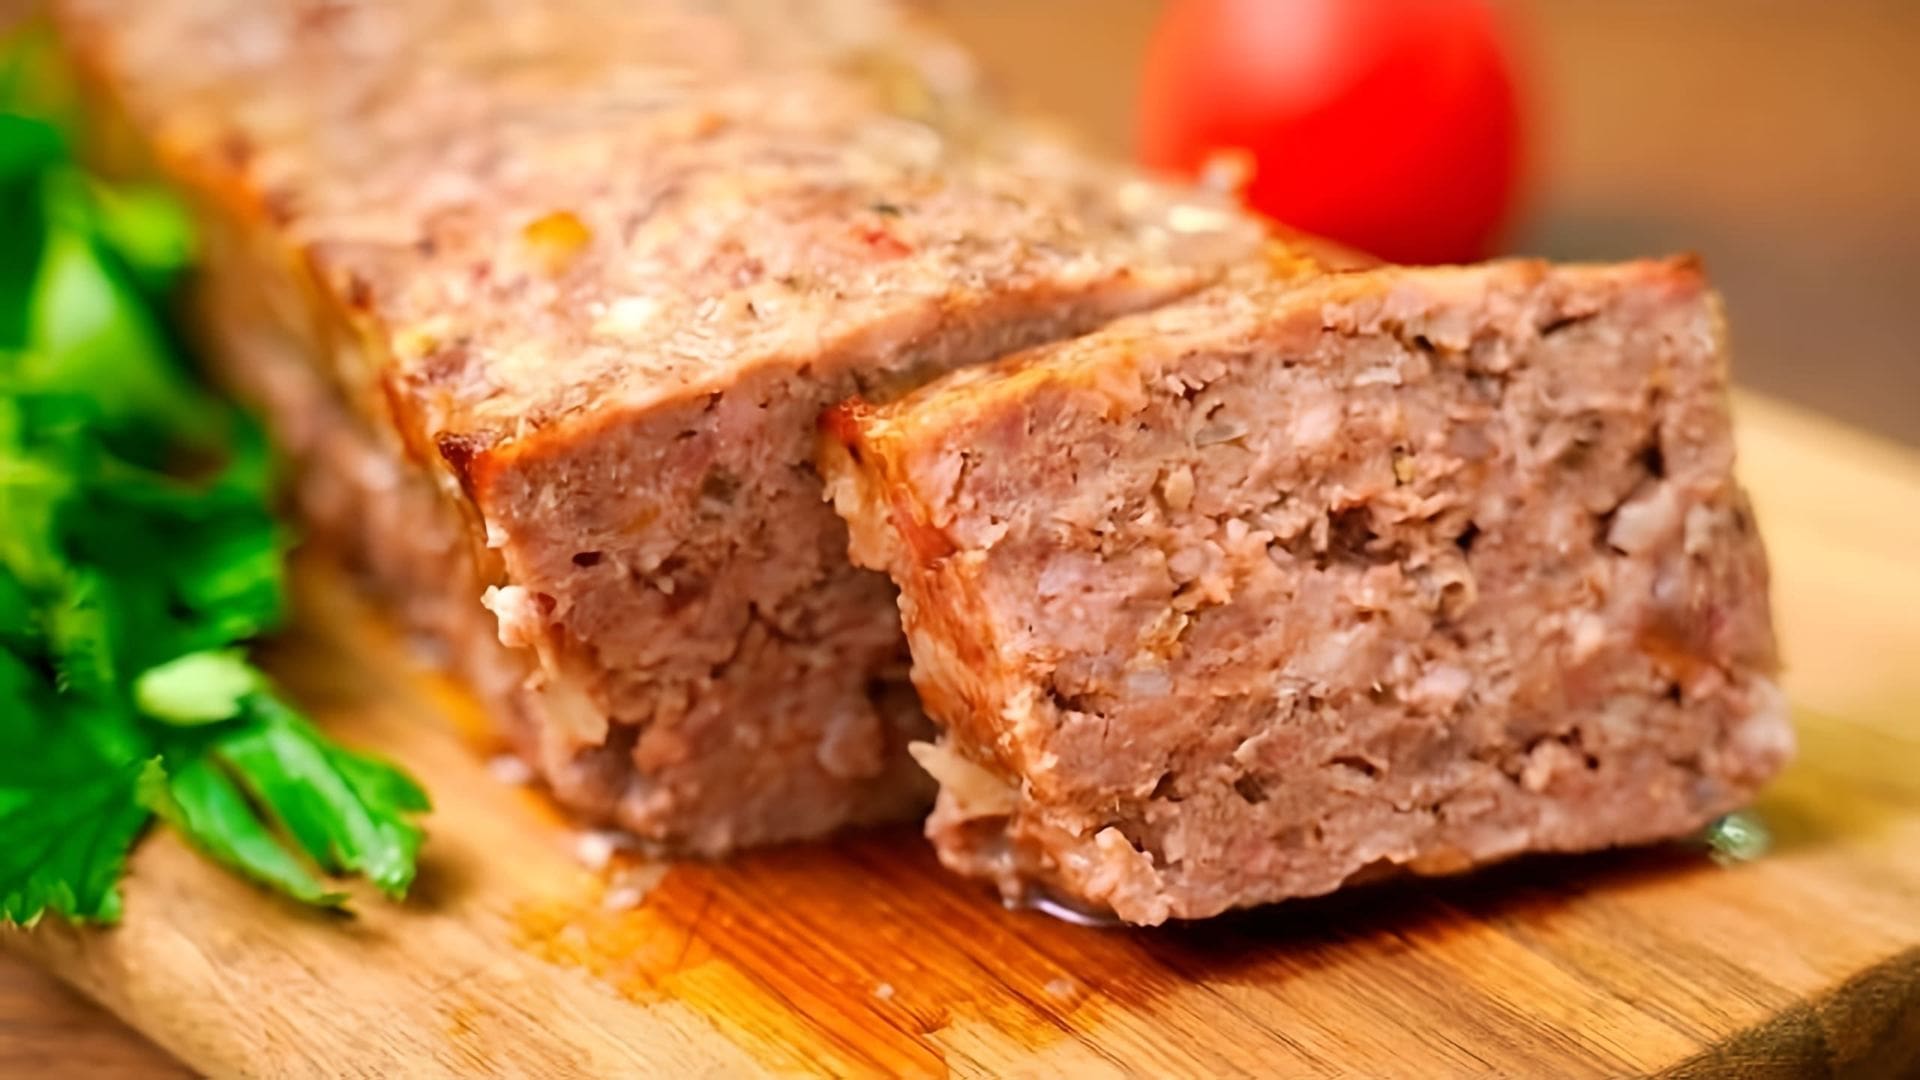 В этом видео-ролике демонстрируется рецепт приготовления очень вкусного мясного хлеба из фарша в духовке